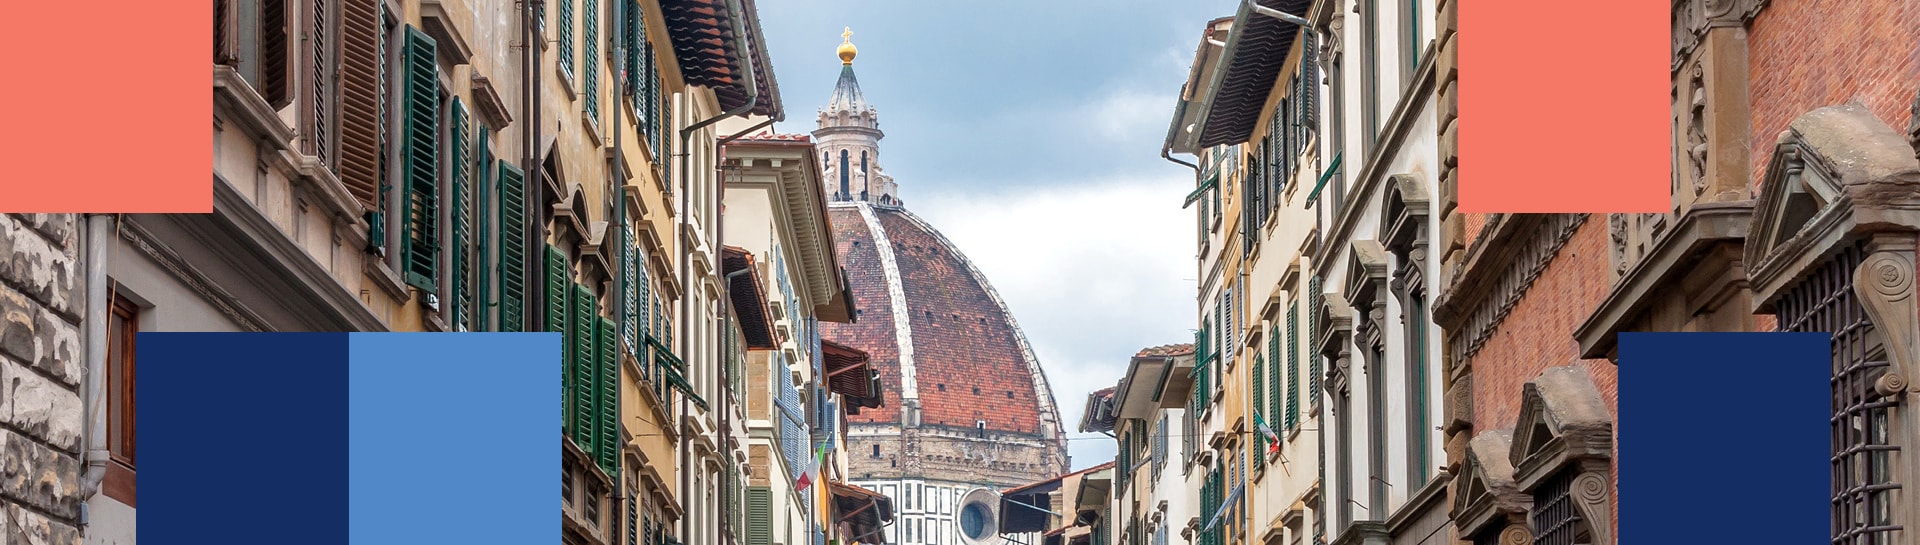 Vista de la cúpula de Brunelleschi desde una calle de Florencia